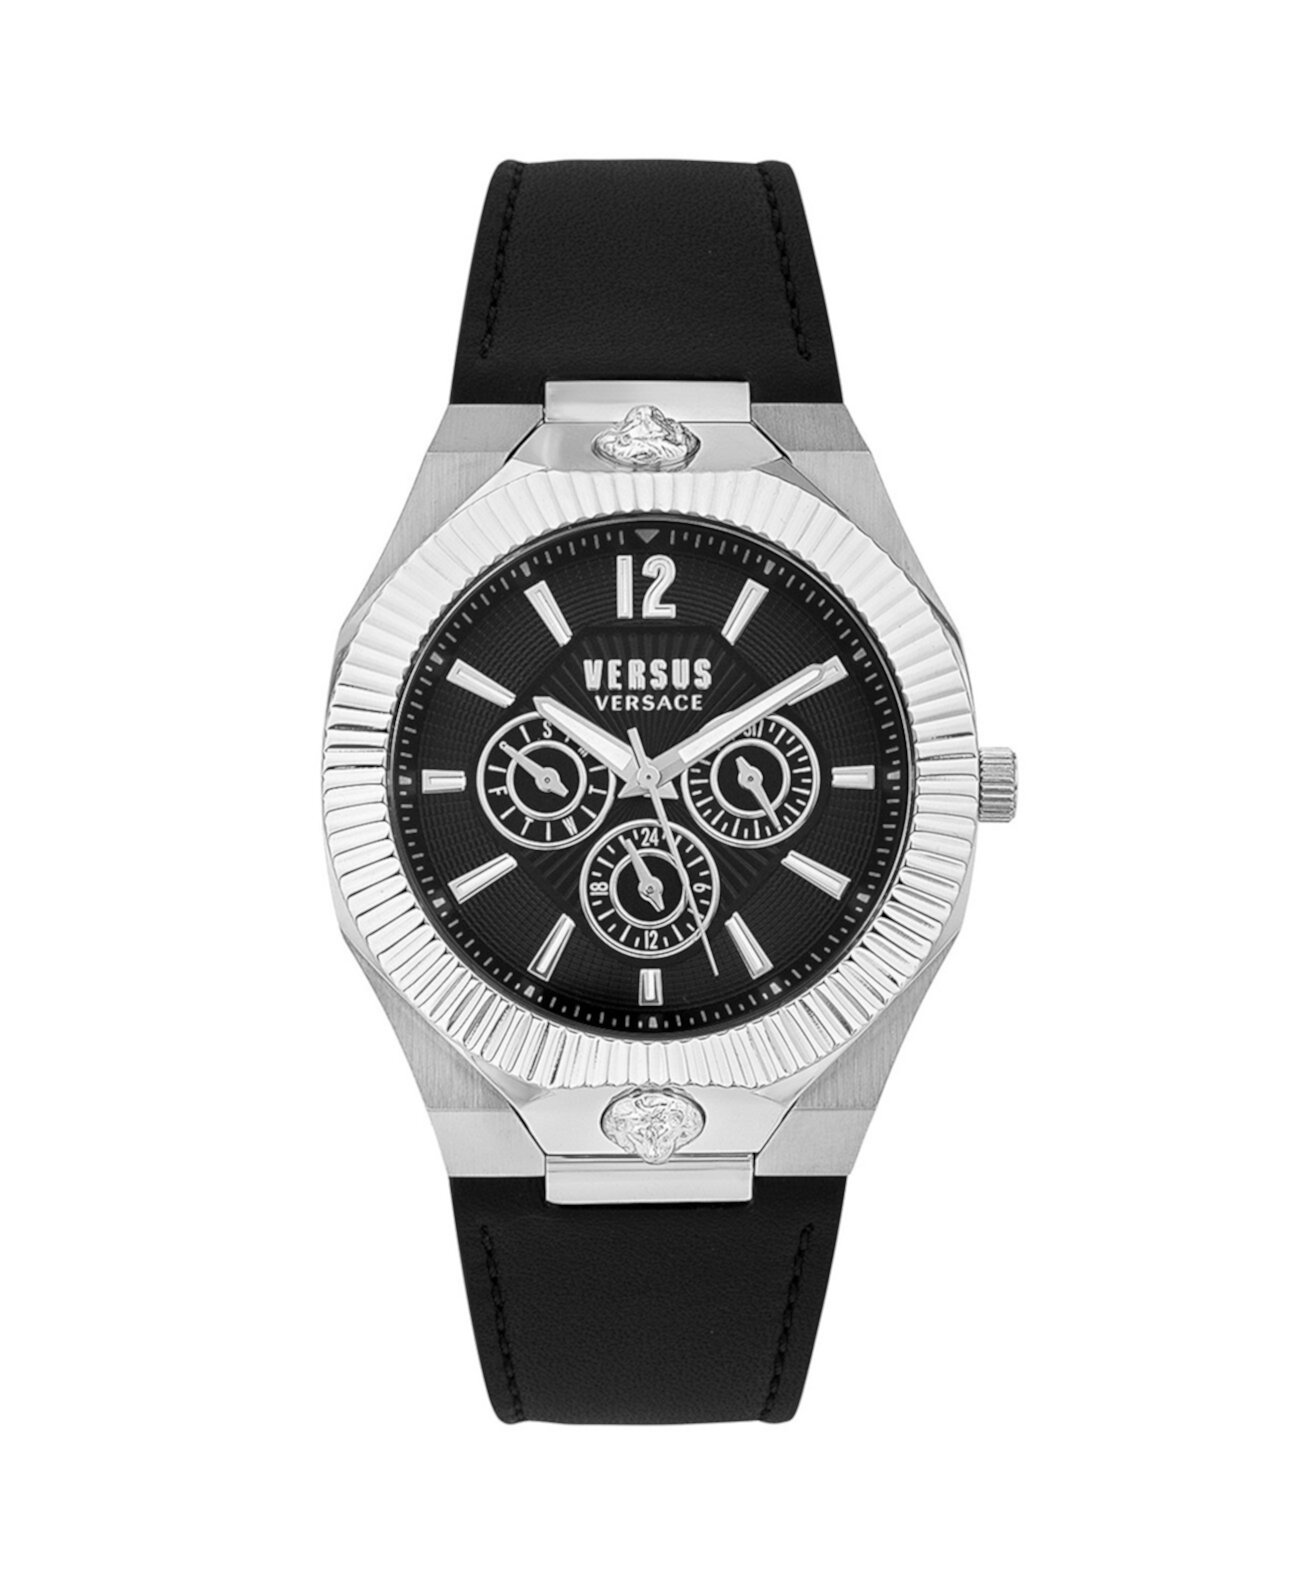 Мужские многофункциональные кварцевые часы Echo Park с черным кожаным ремешком 42 мм Versus Versace